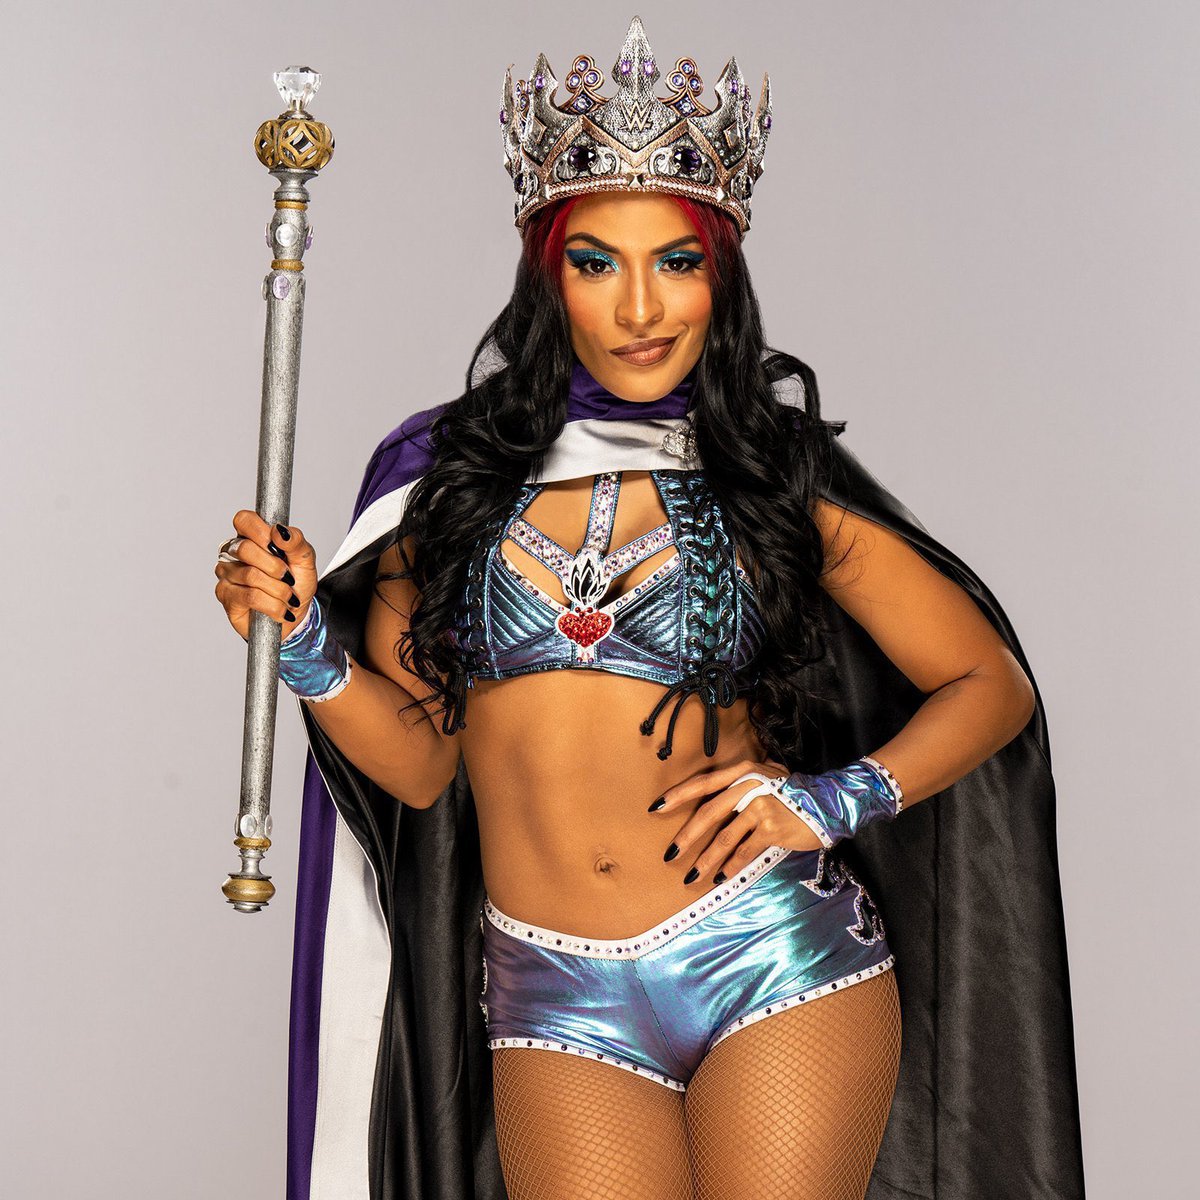 👑 Queen @ZelinaVegaWWE appreciation tweet 👑 #WWE